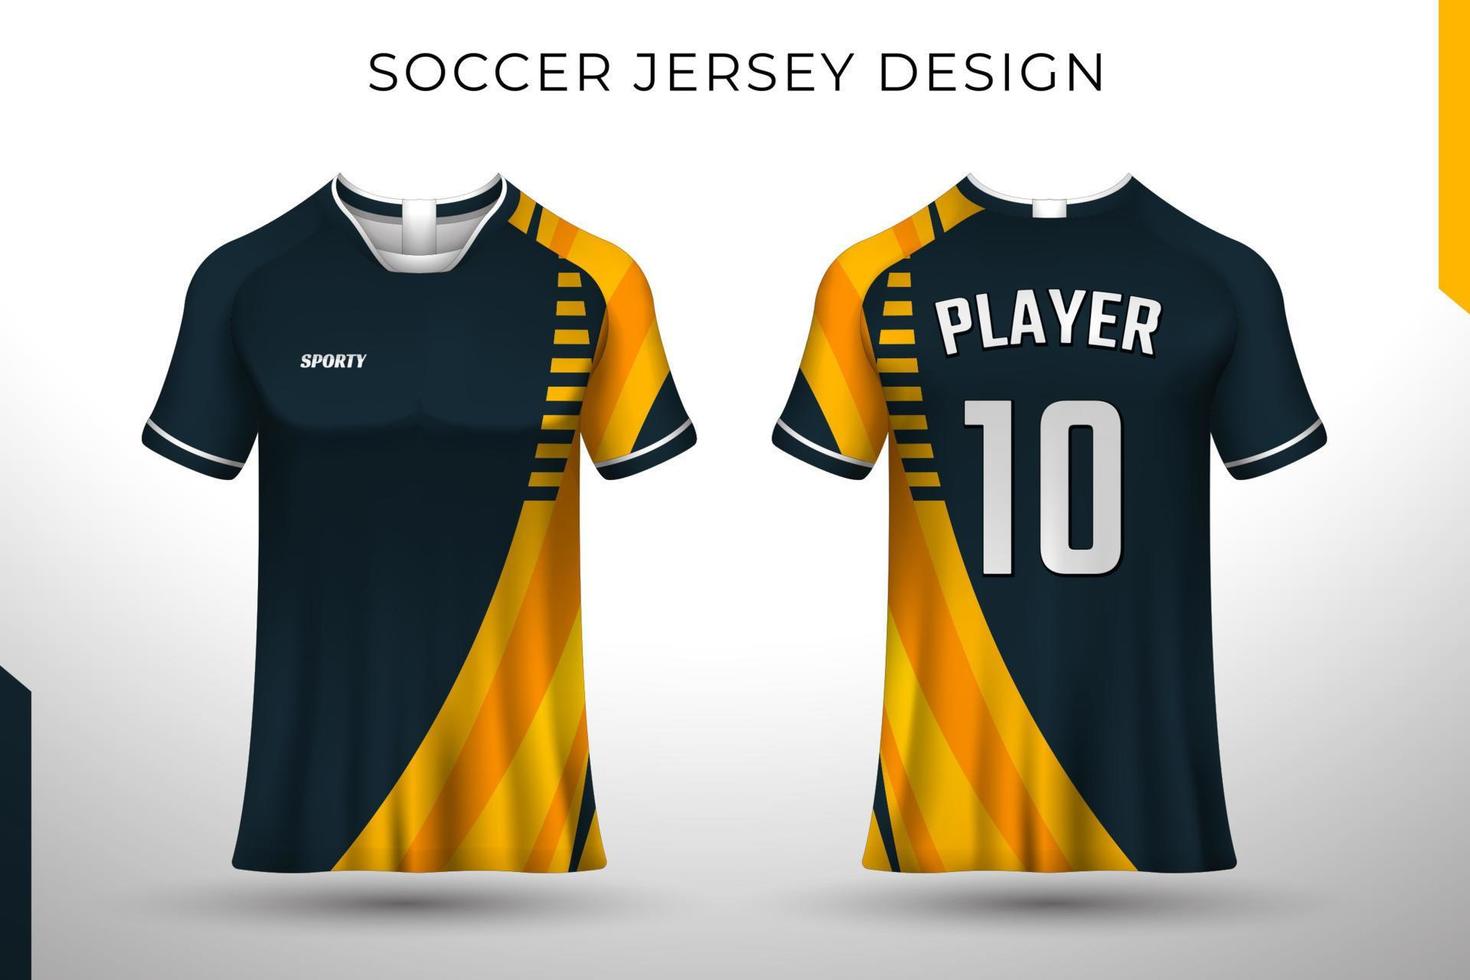 Vorderseite Rückseite T-Shirt-Design. Sportdesign für Fußball, Rennen, Radfahren, Gaming-Jersey-Vektor. vektor